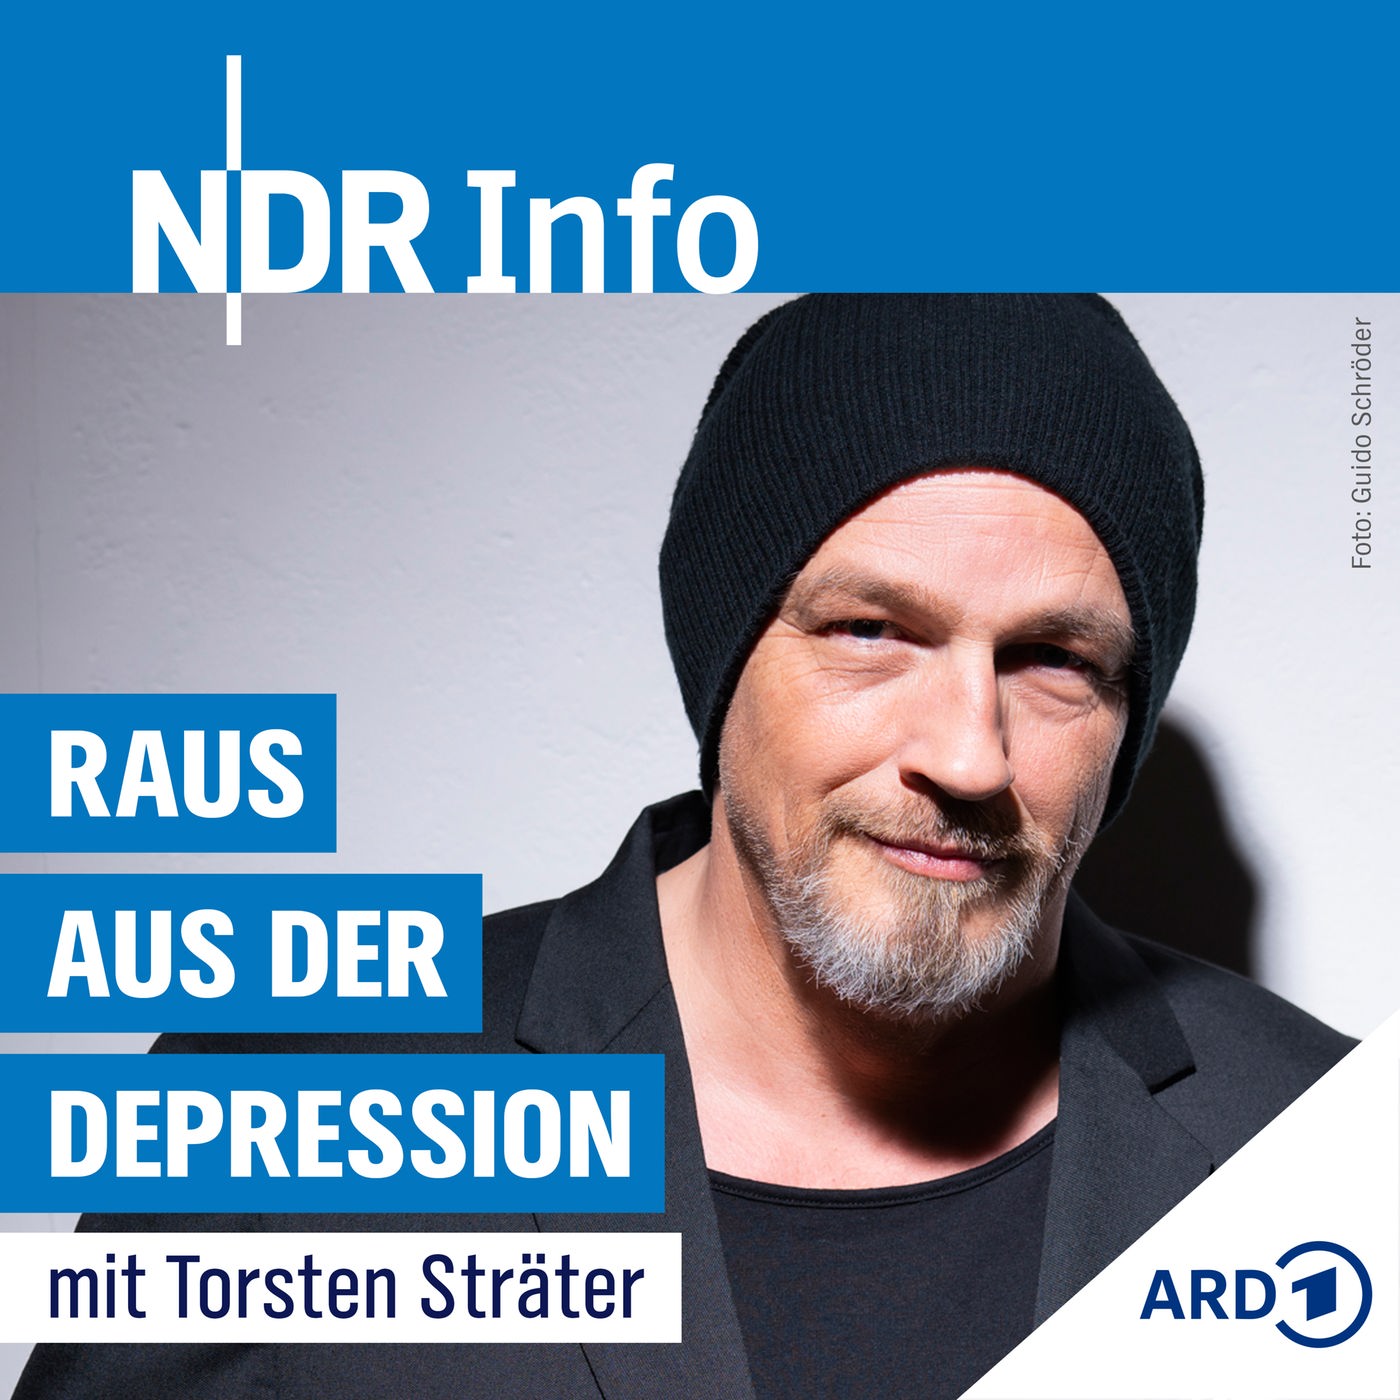 Torsten Sträter: Depression bei Männern